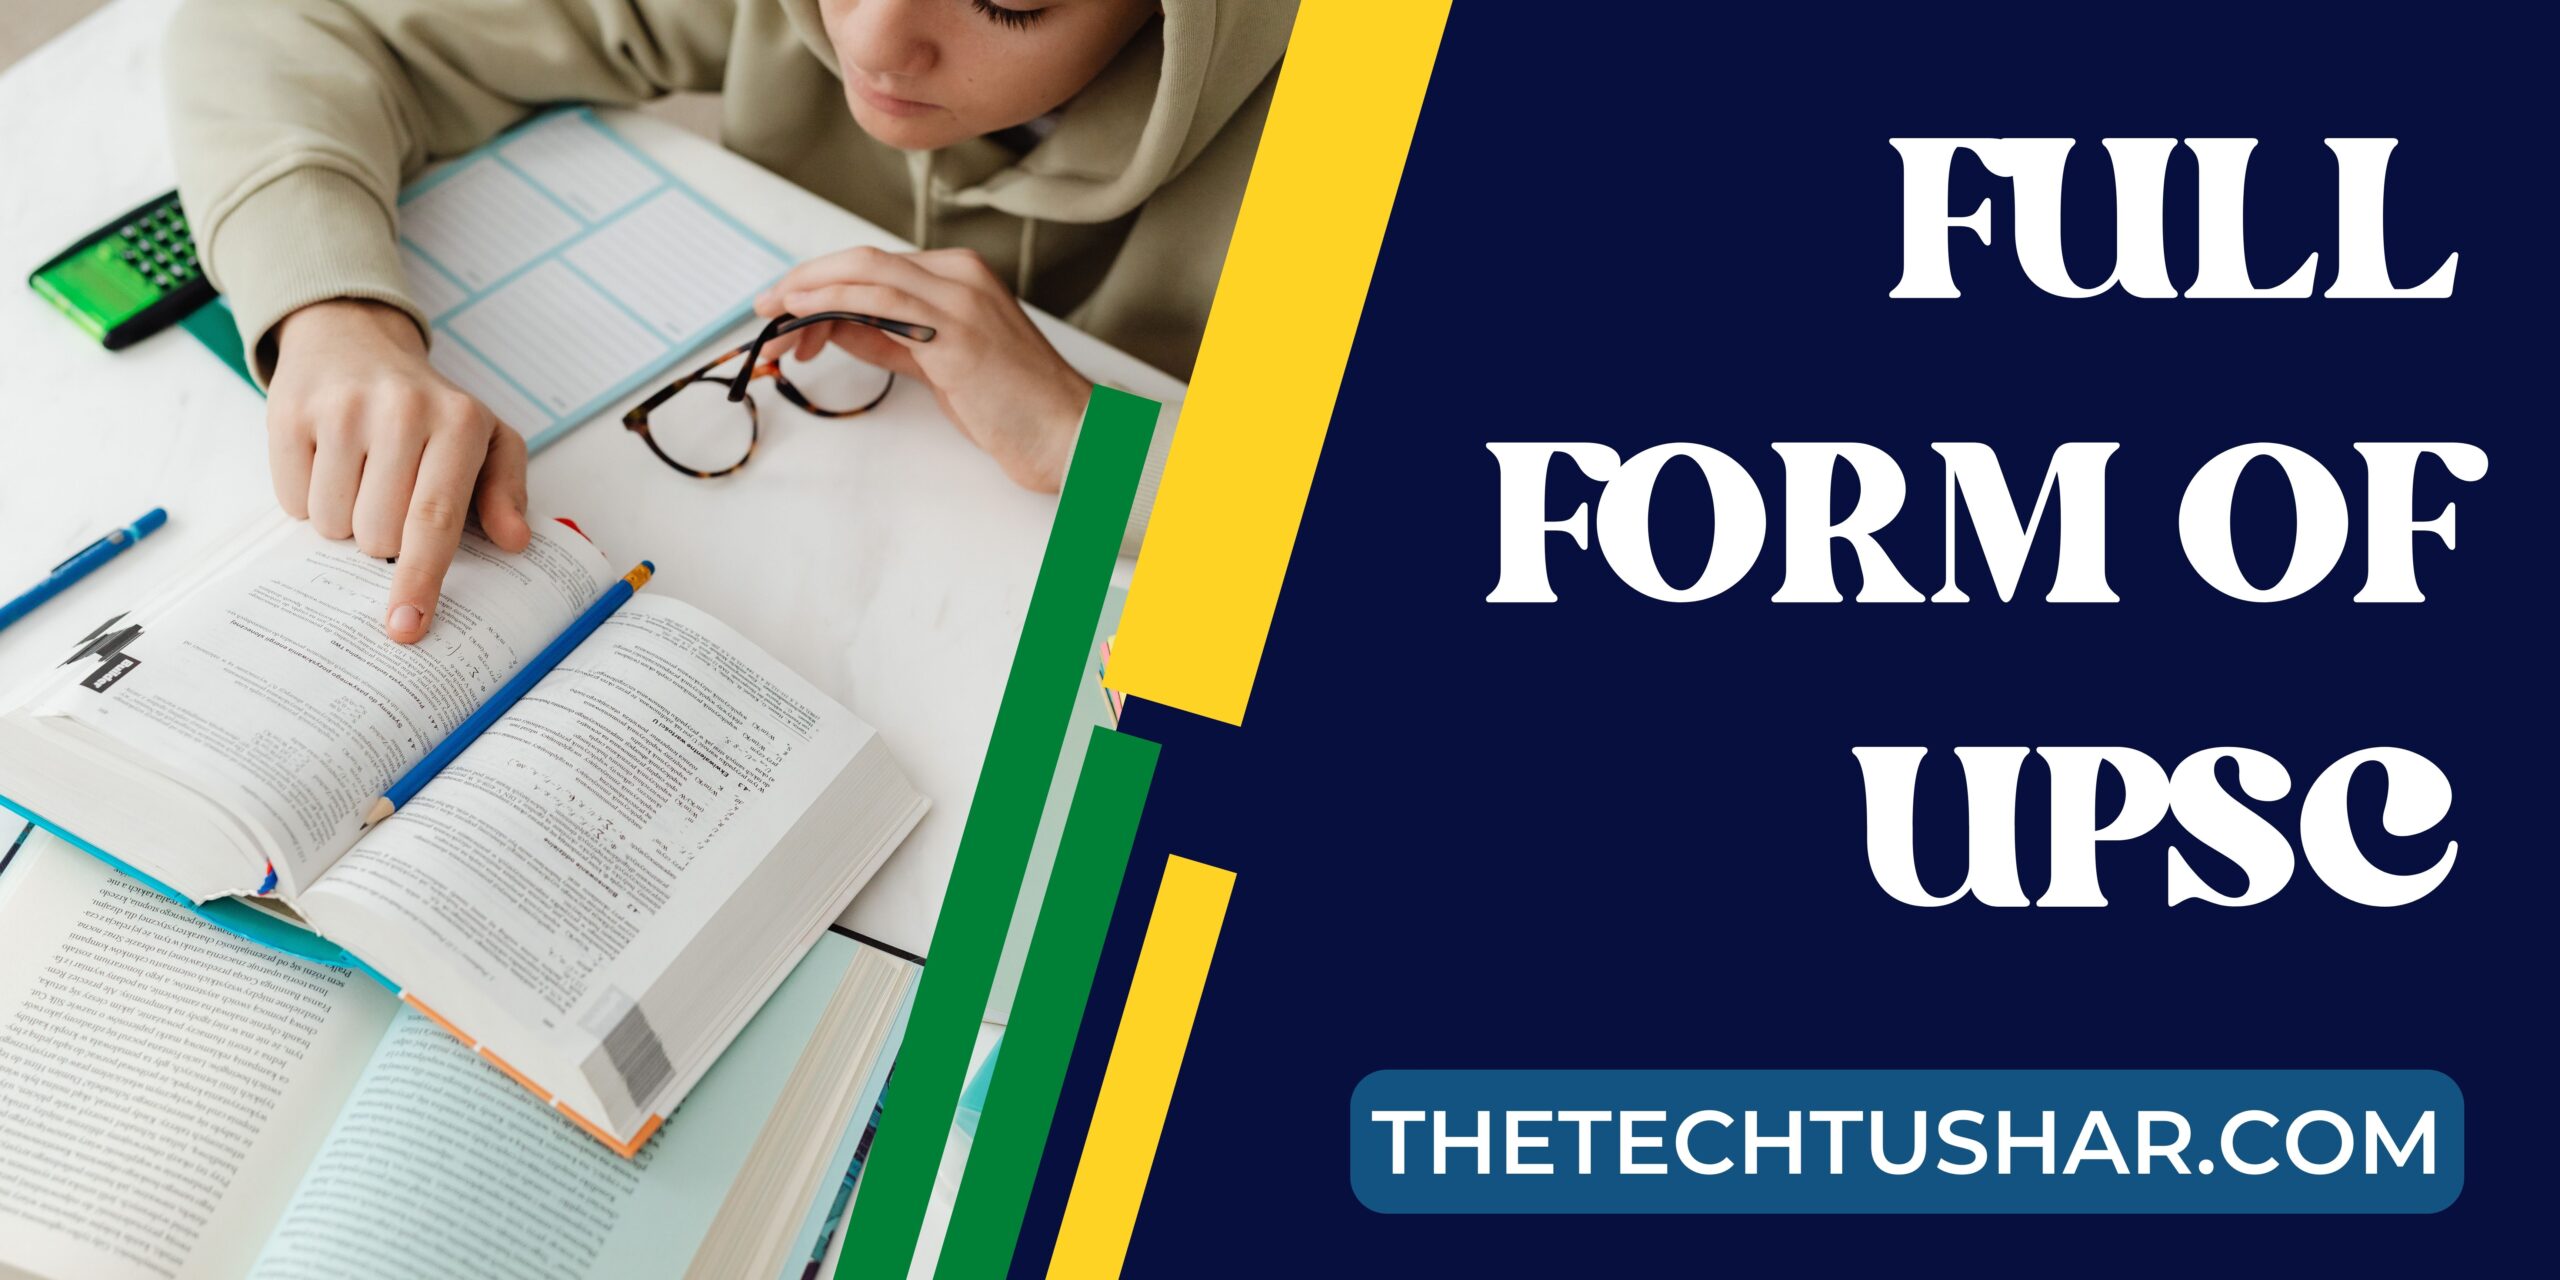 Full Form Of UPSC|Full Form Of UPSC|Tushar|Thetechtushar